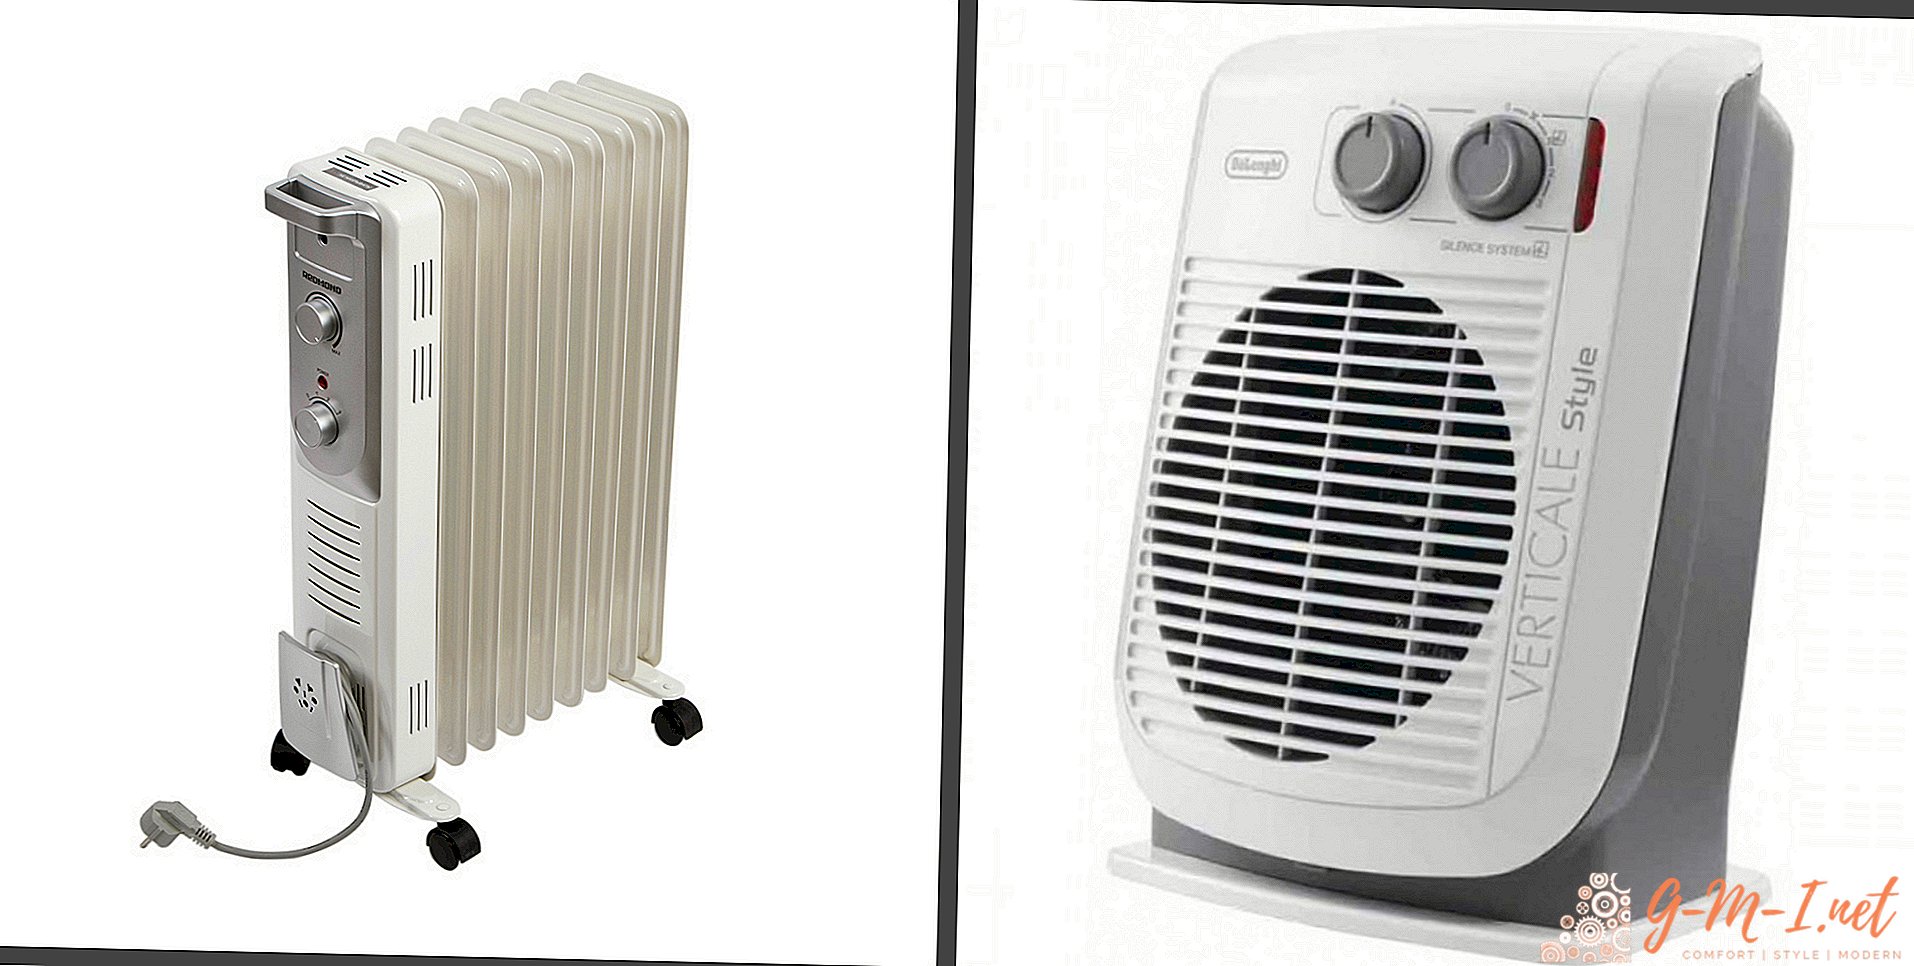 ¿Qué es mejor calentador de ventilador o calentador de aceite?